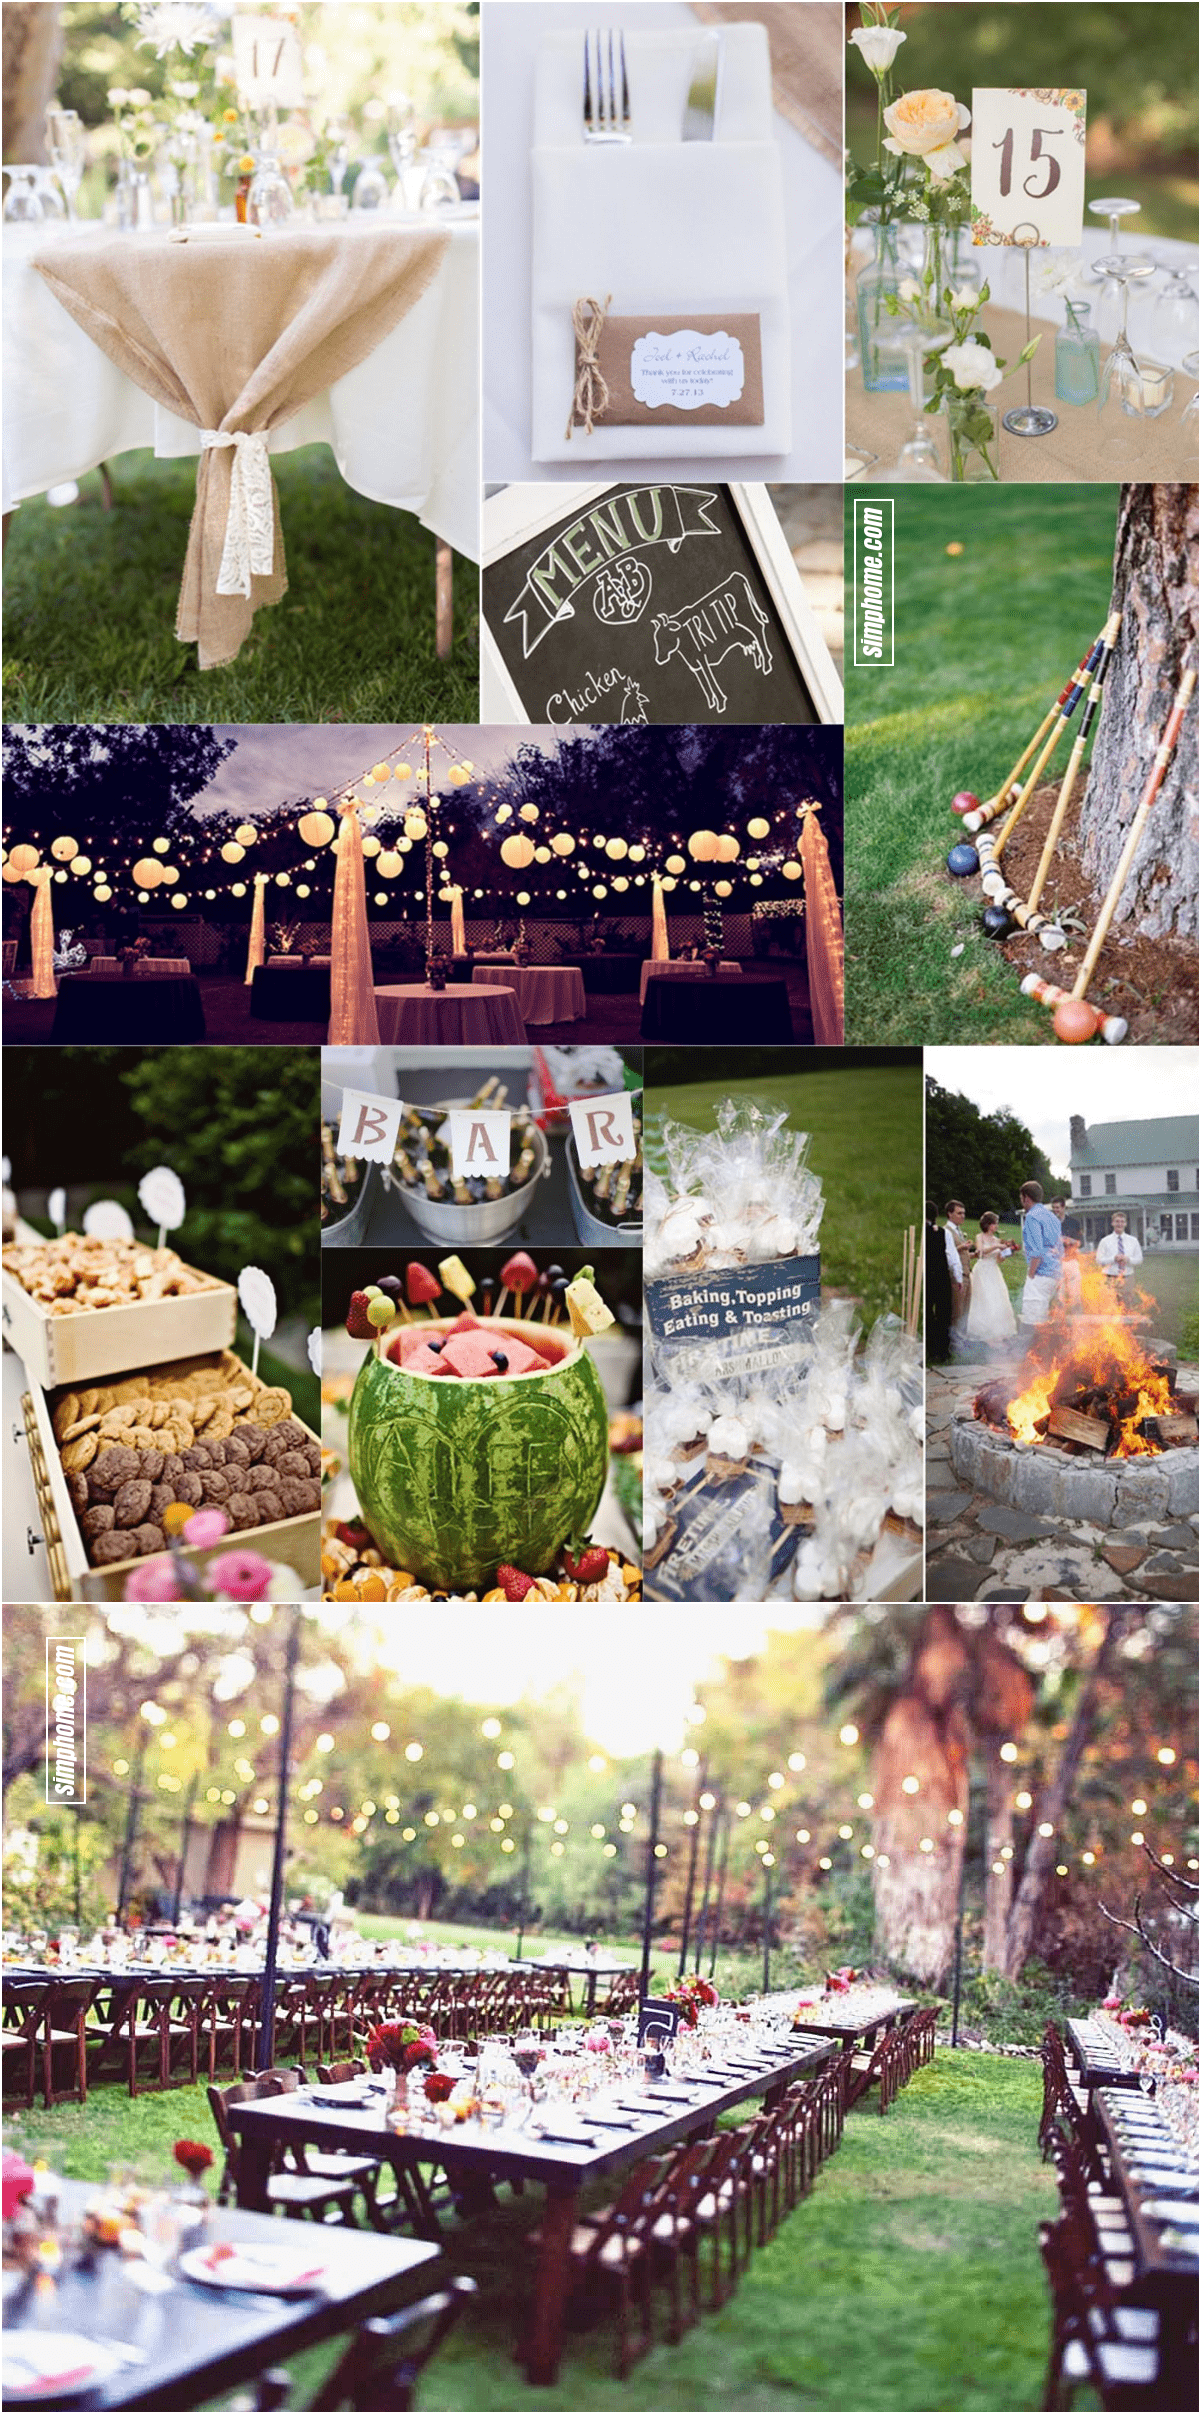 24.SIMPHOME.COM essential guide to a backyard BBQ wedding on a budget